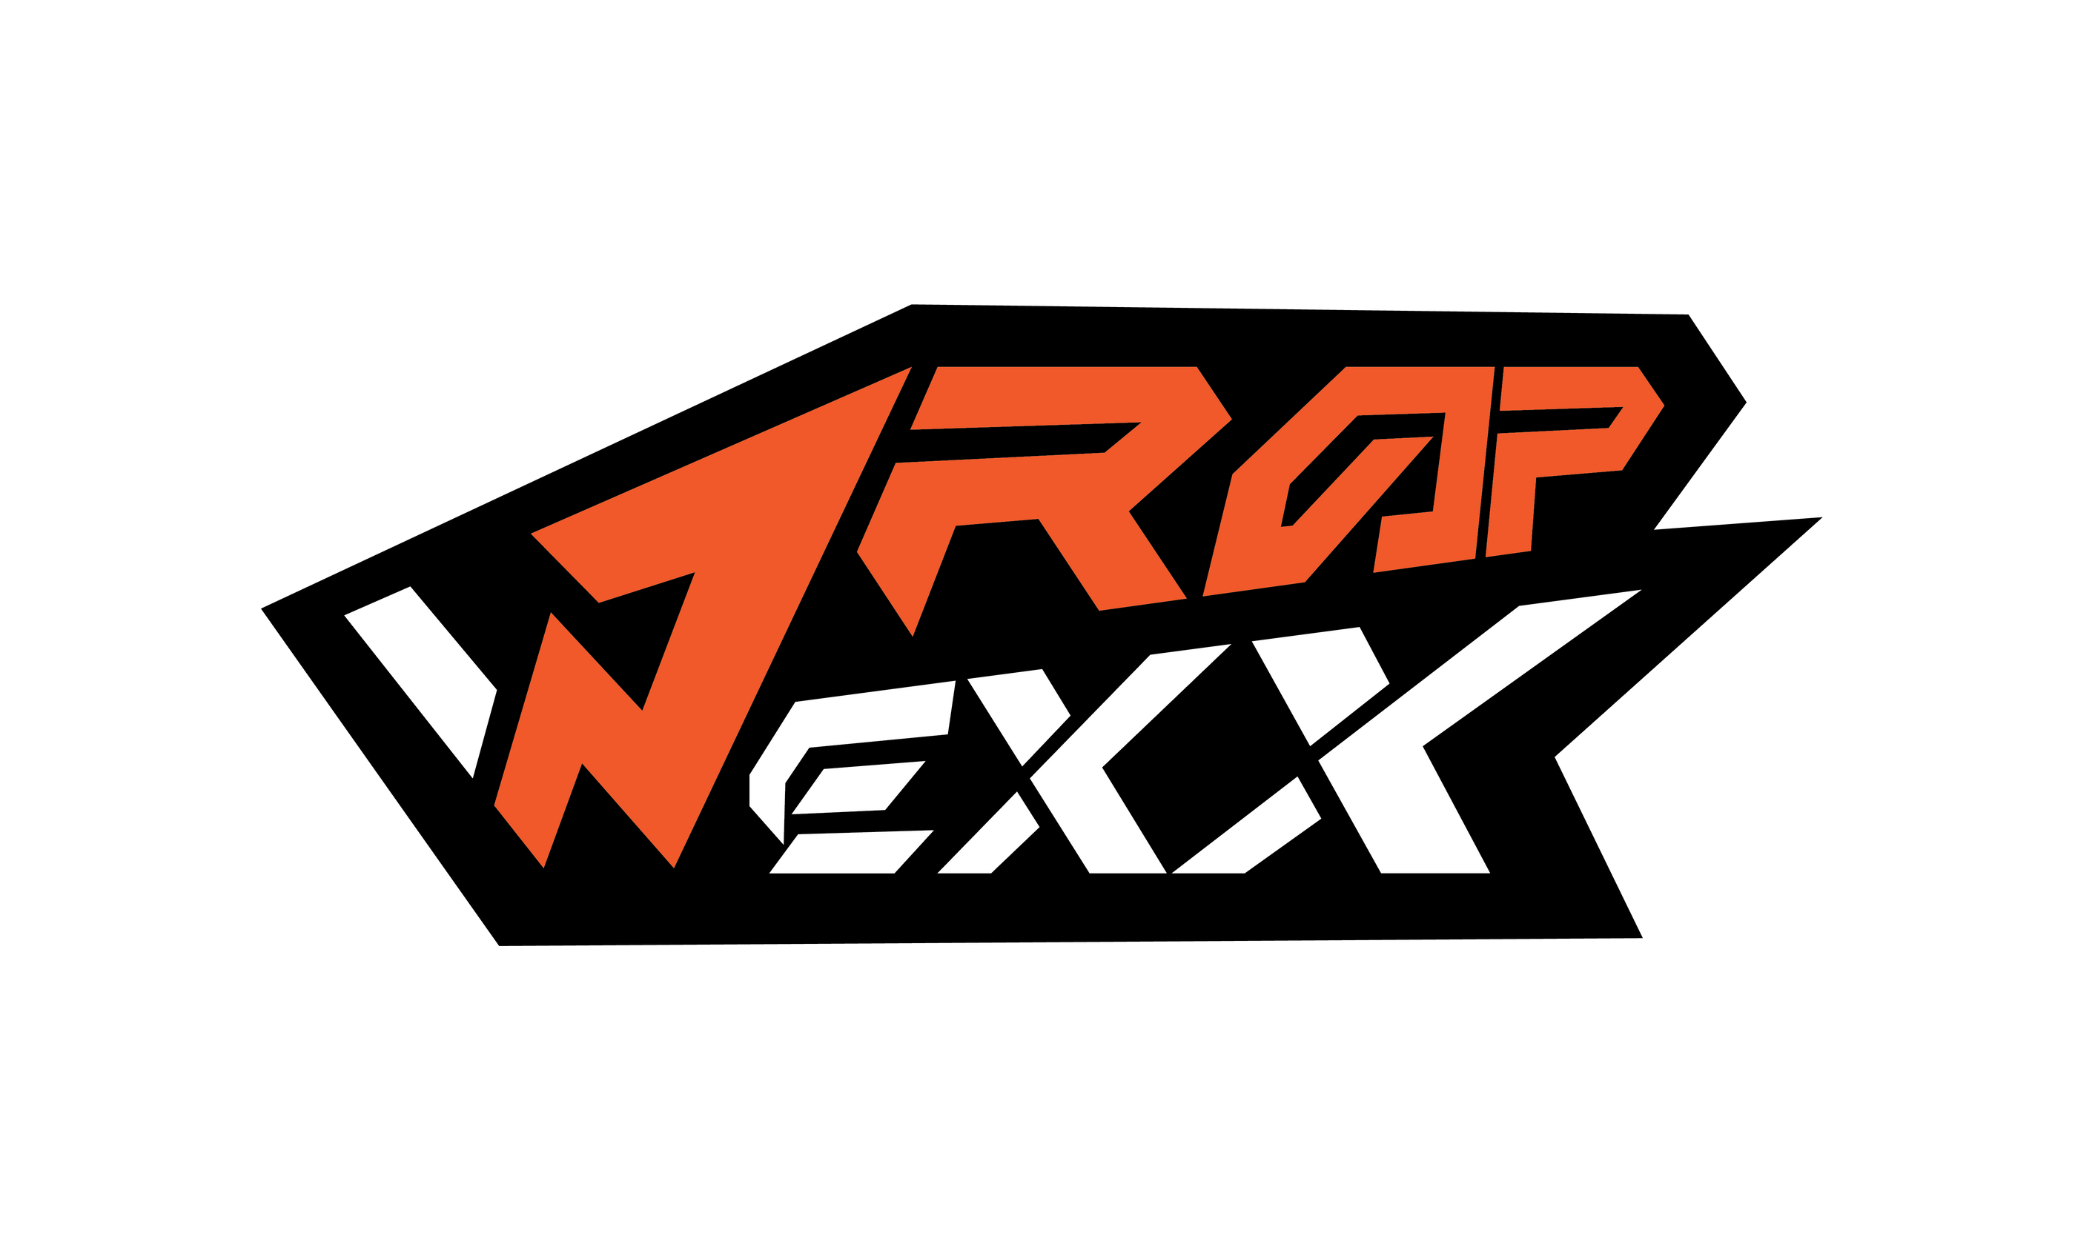 Wrapexx